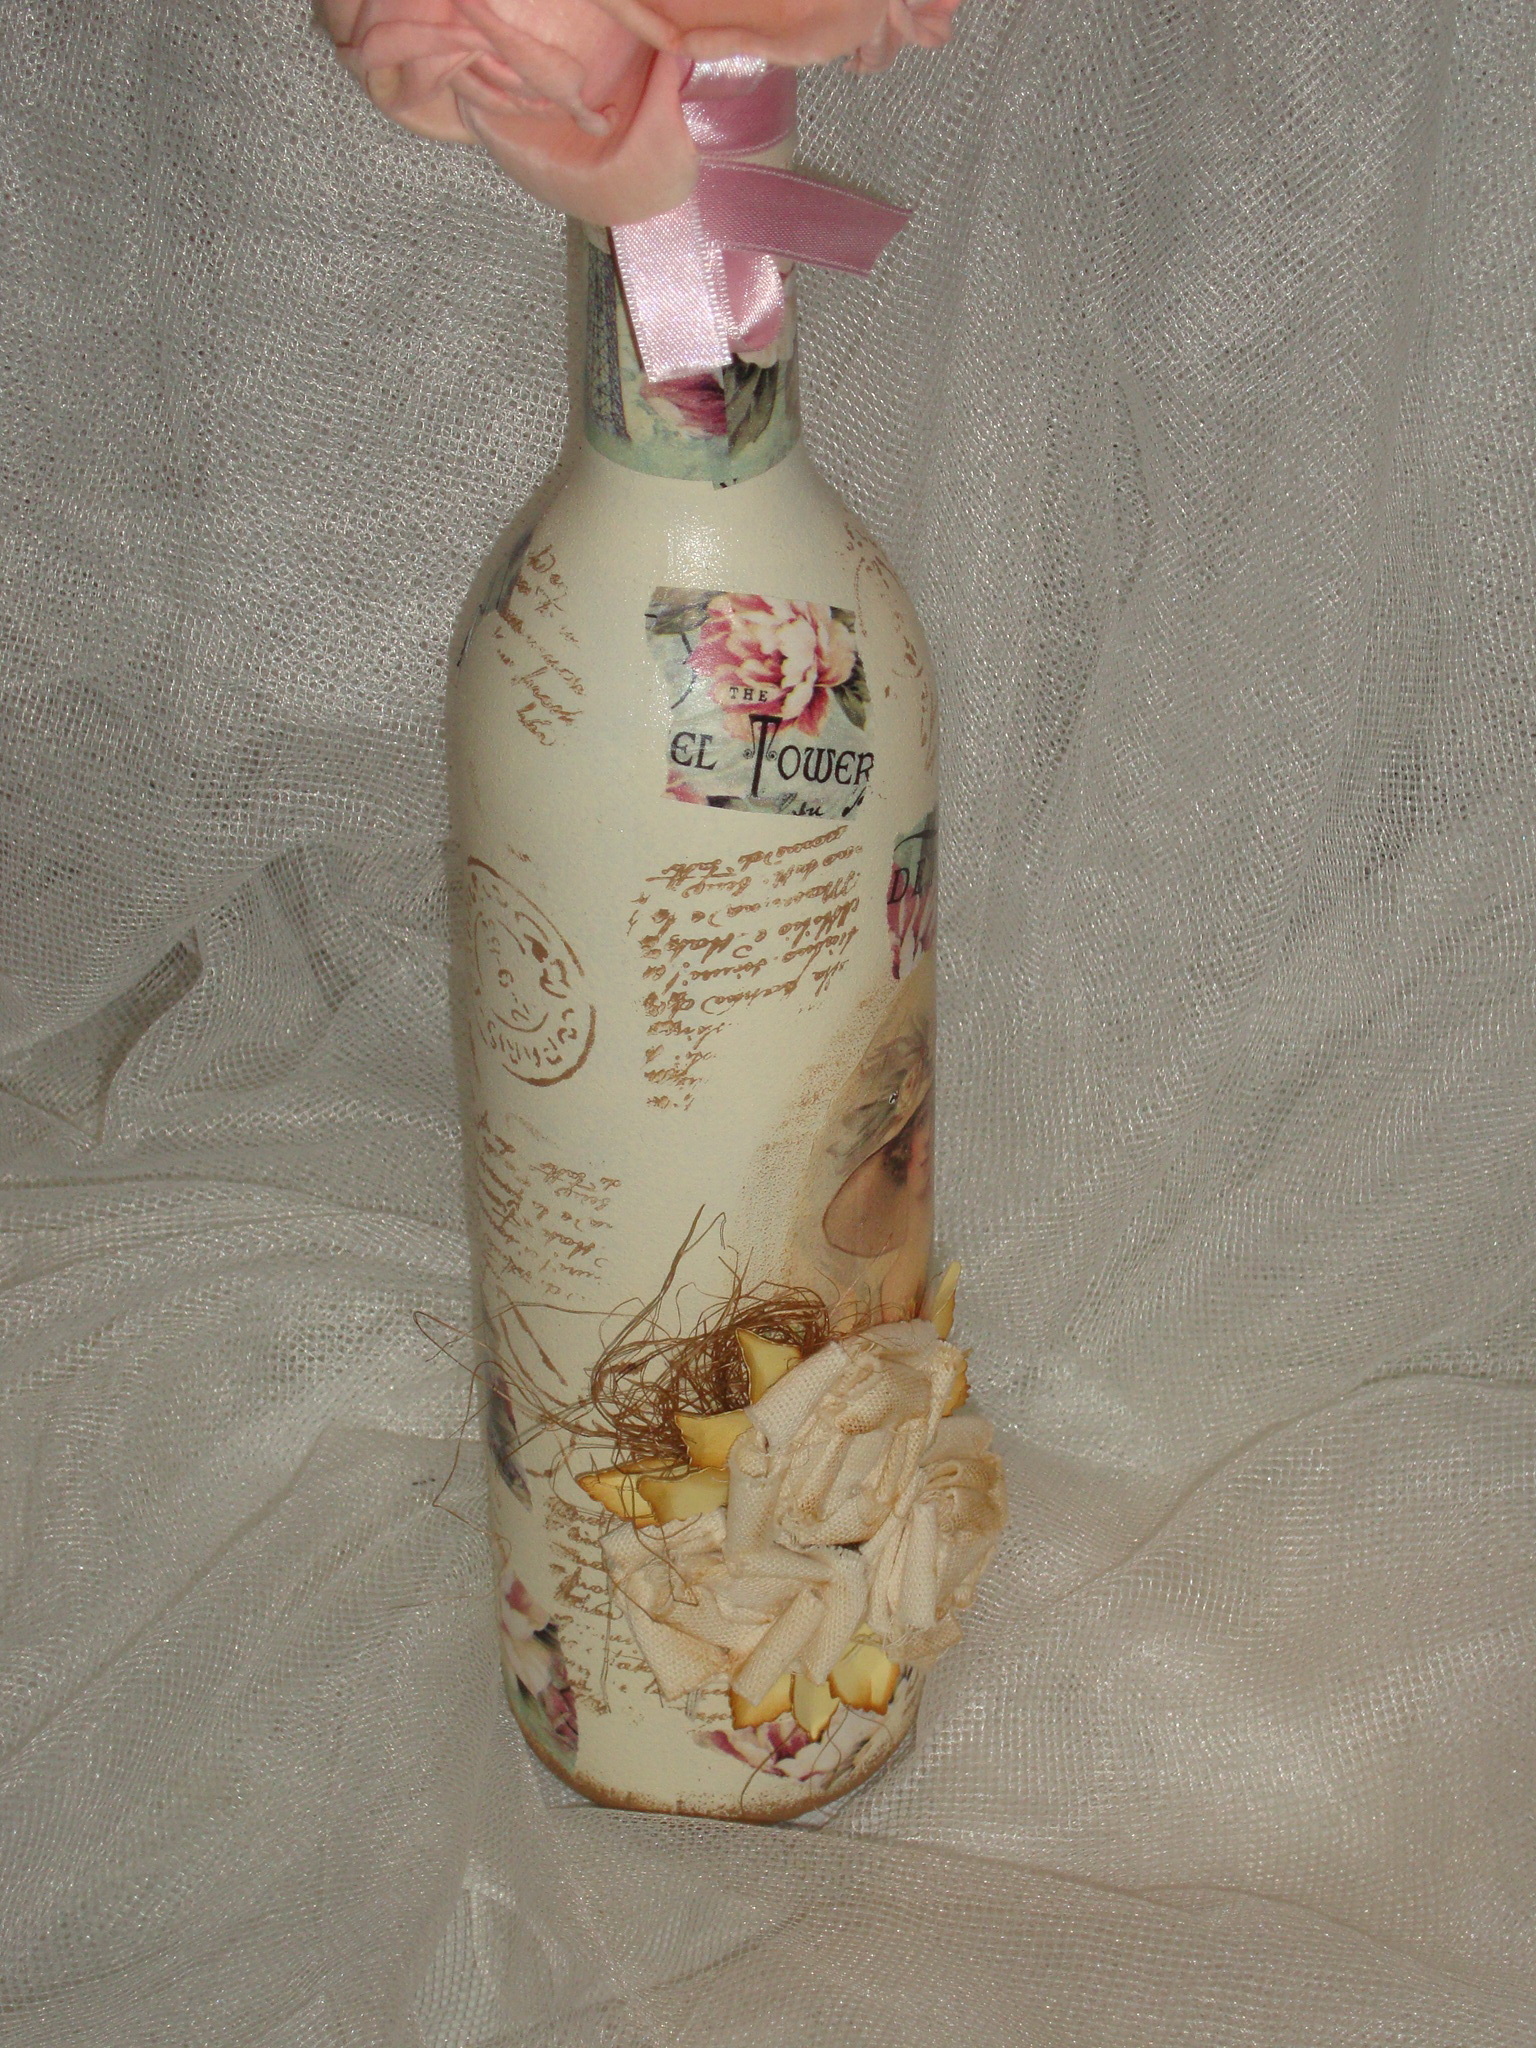 10 шаг: Украсила горлышко бутылки розовой ленточкой "Safisa" арт: Р 20110 и декоративным скотчем Стамперия Арт: SBA 234.